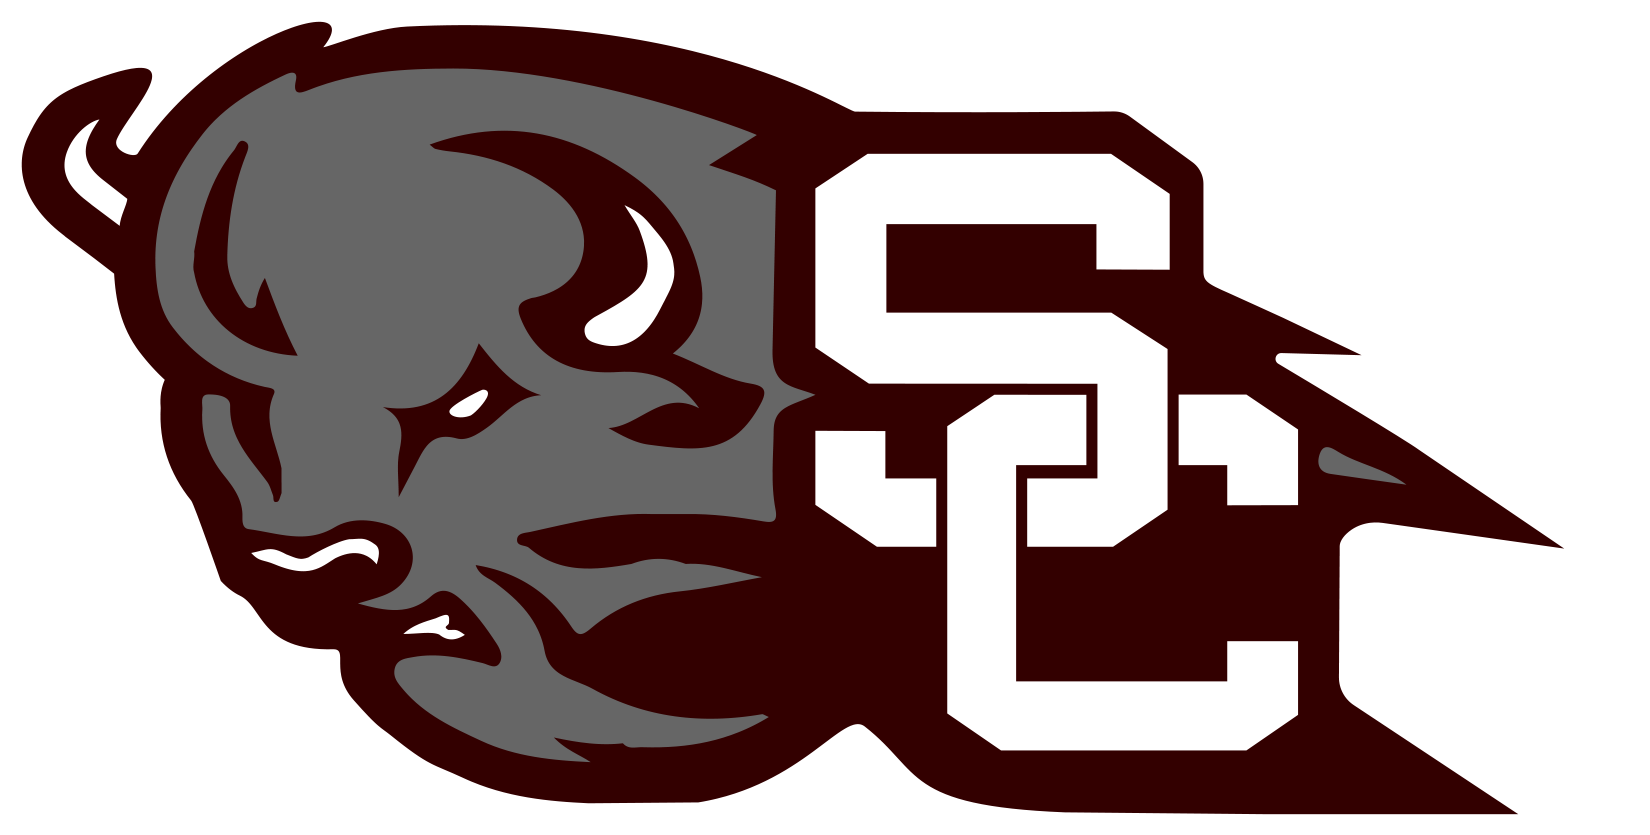 Station Camp High School Logo (1656x847)